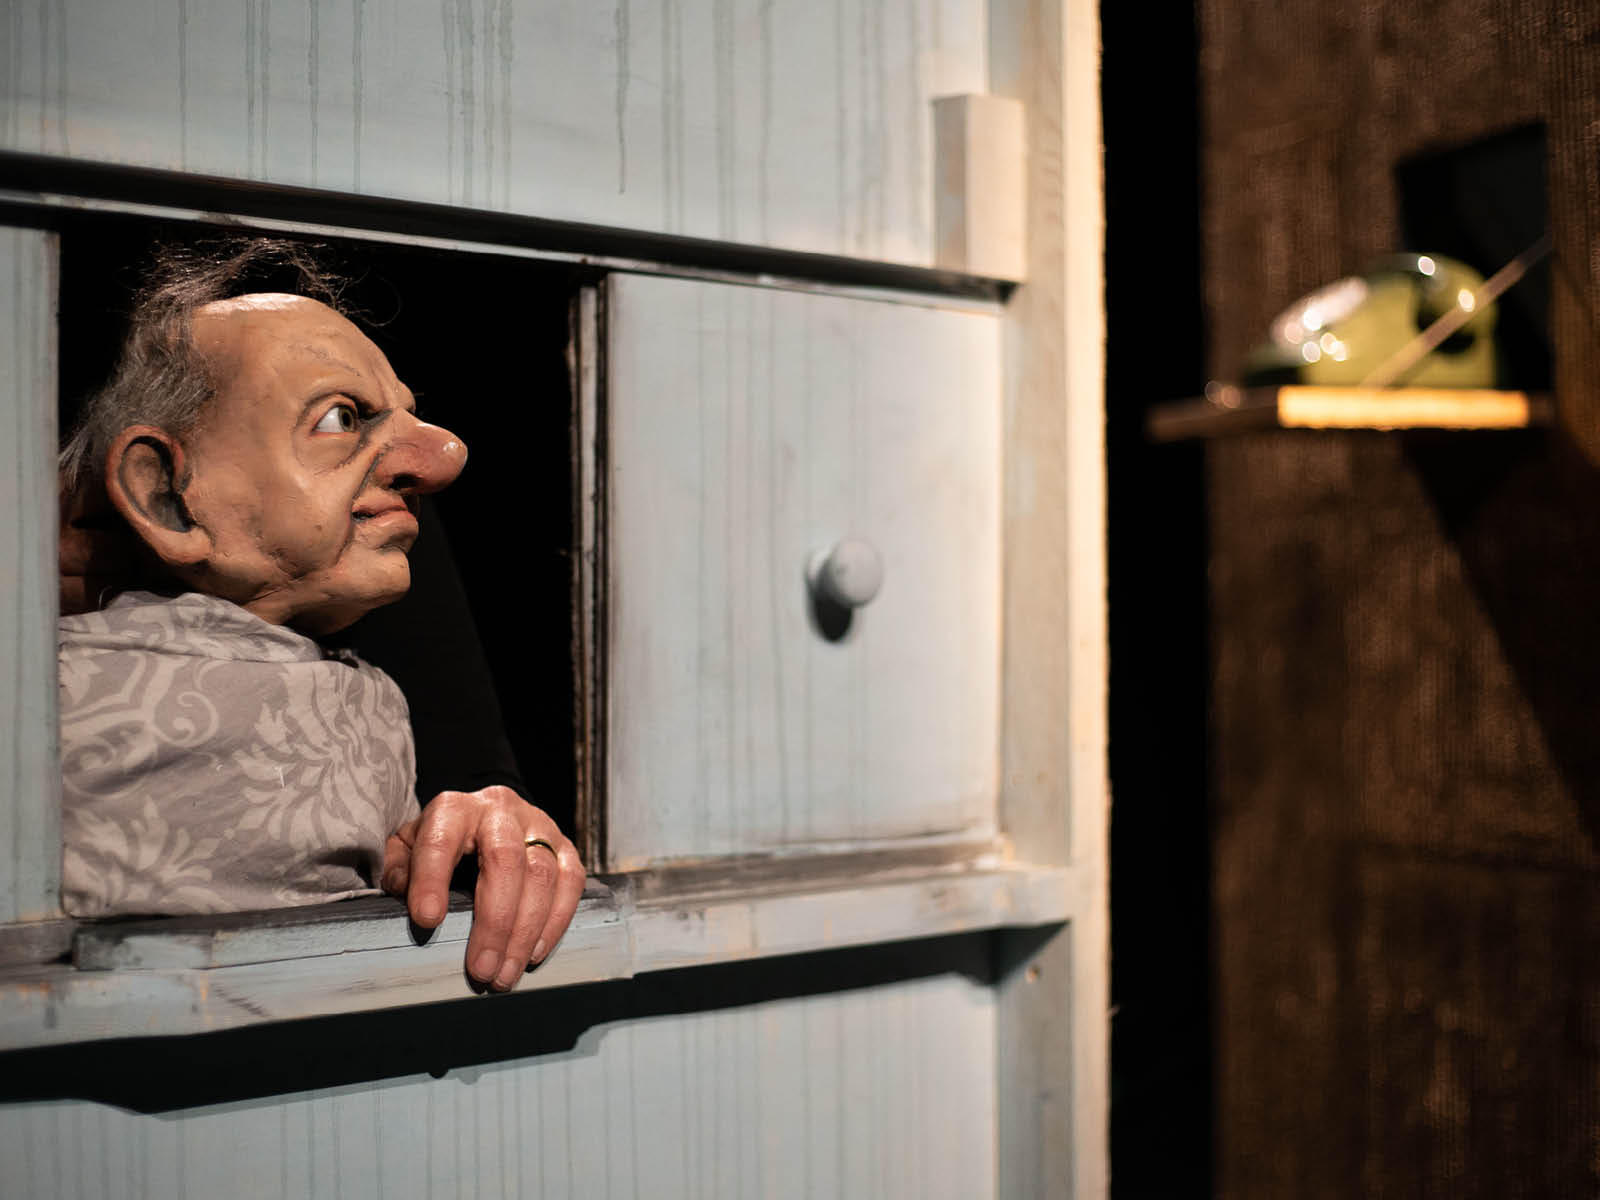 Die Puppe eines alten Mannes mit Halbglatze schaut aus einem Fenster. Im Hintergrund ist ein altes grünes Telefon zu erkennen.